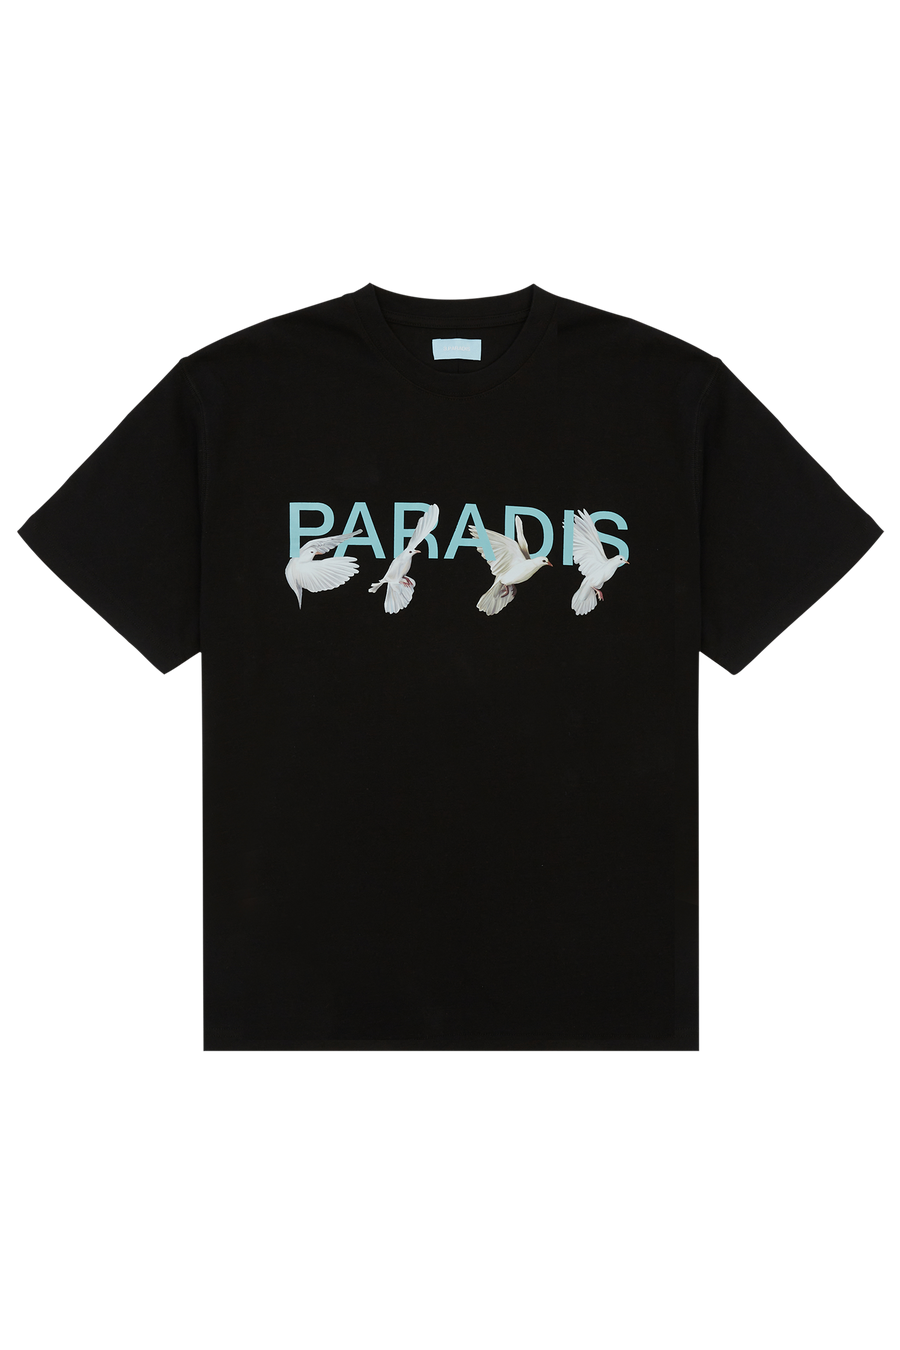 PARADIS BLACK T-SHIRT